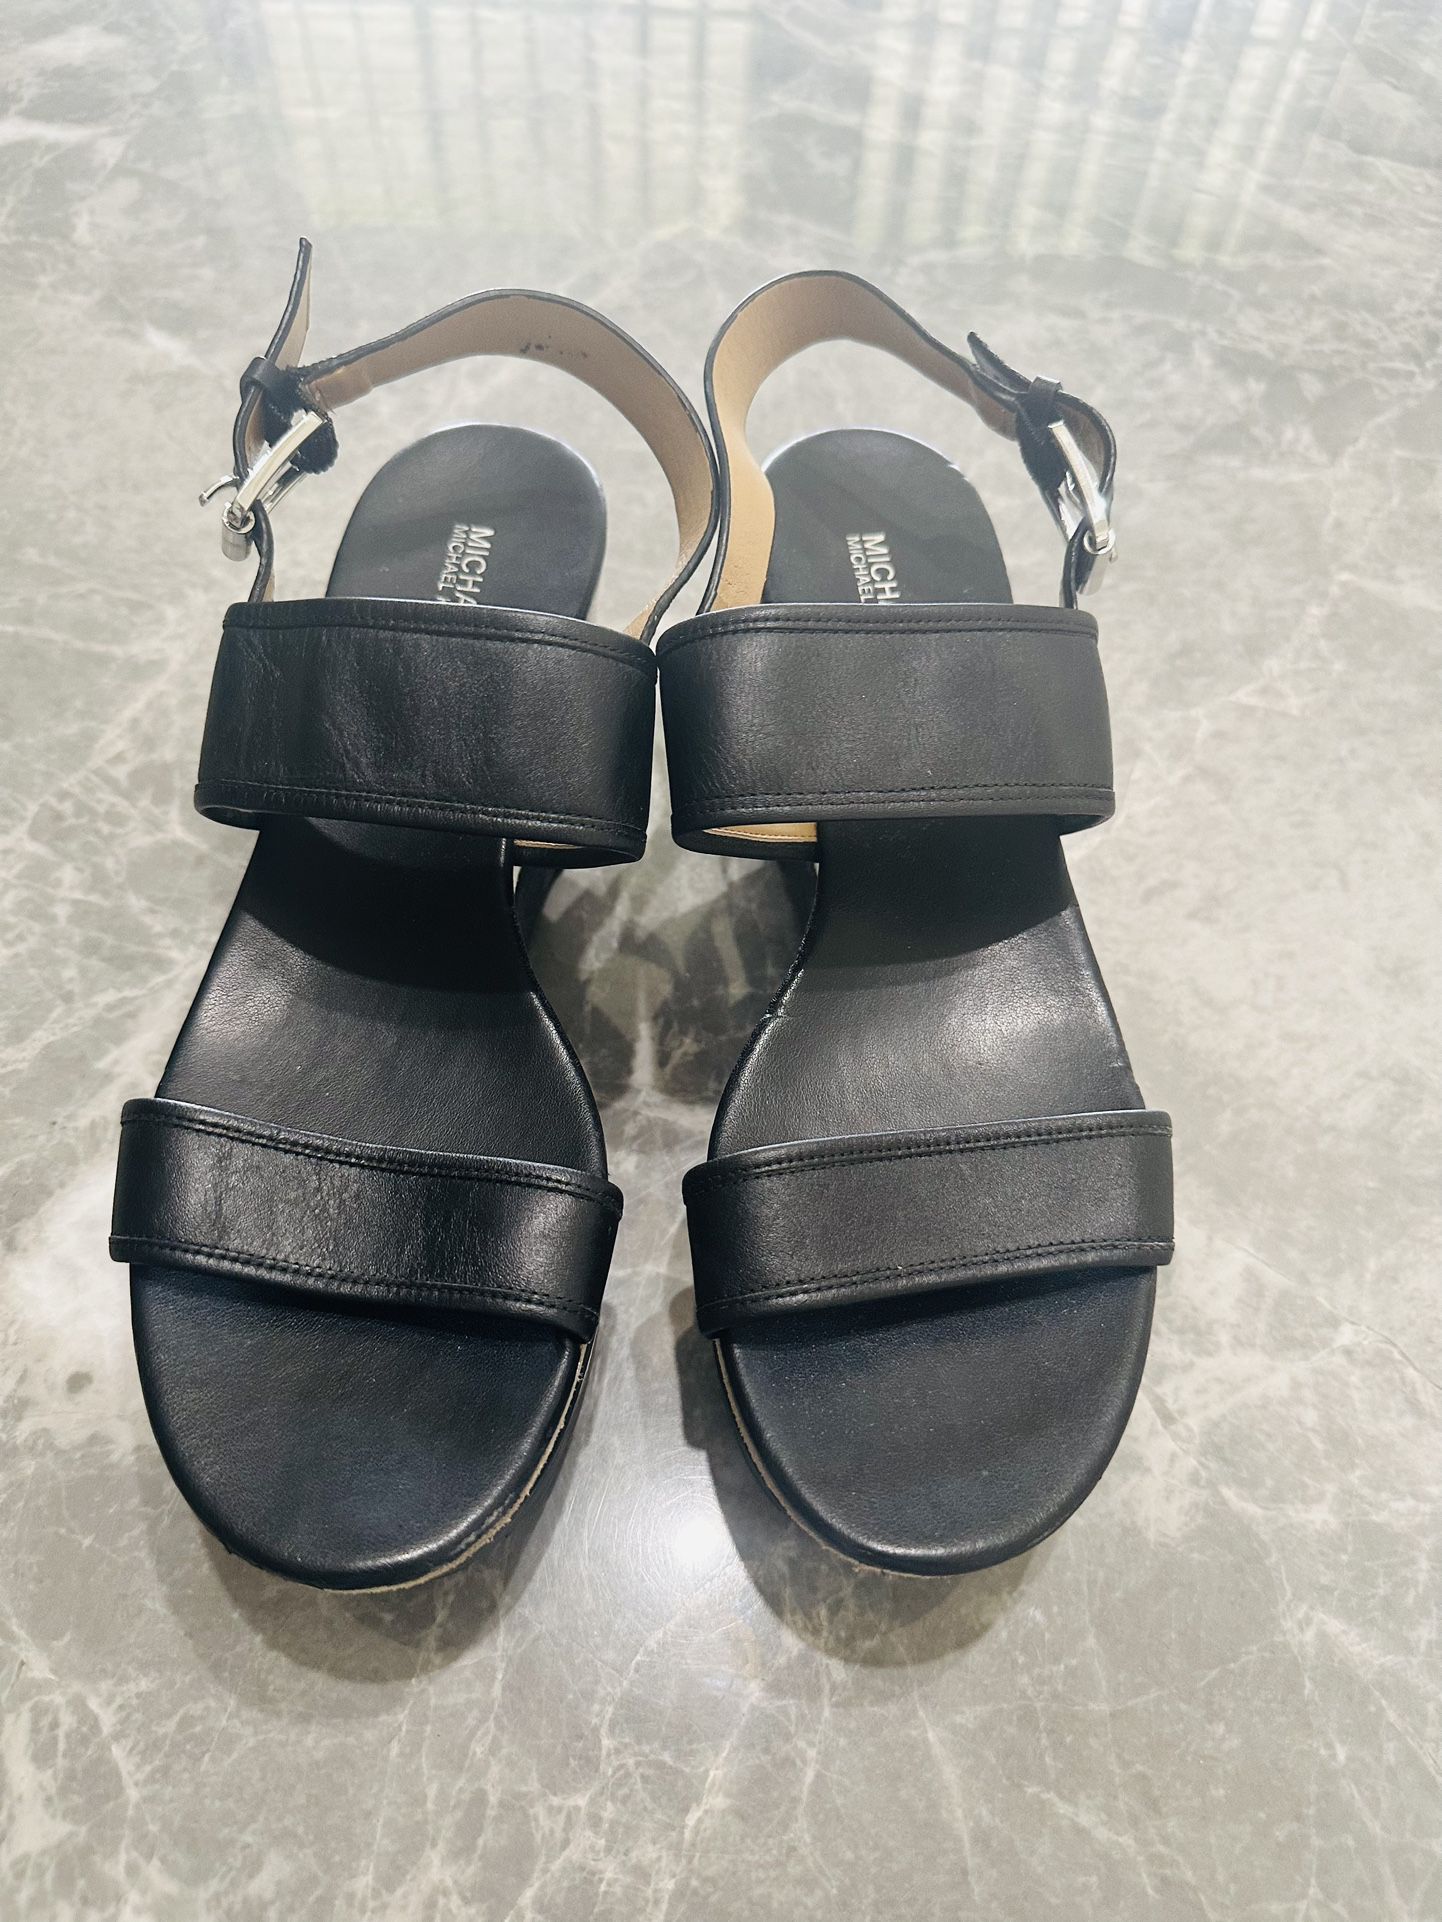 Michael Michael Kors Josephine Leather Peep Toe Wedge Sandal Black Size 9